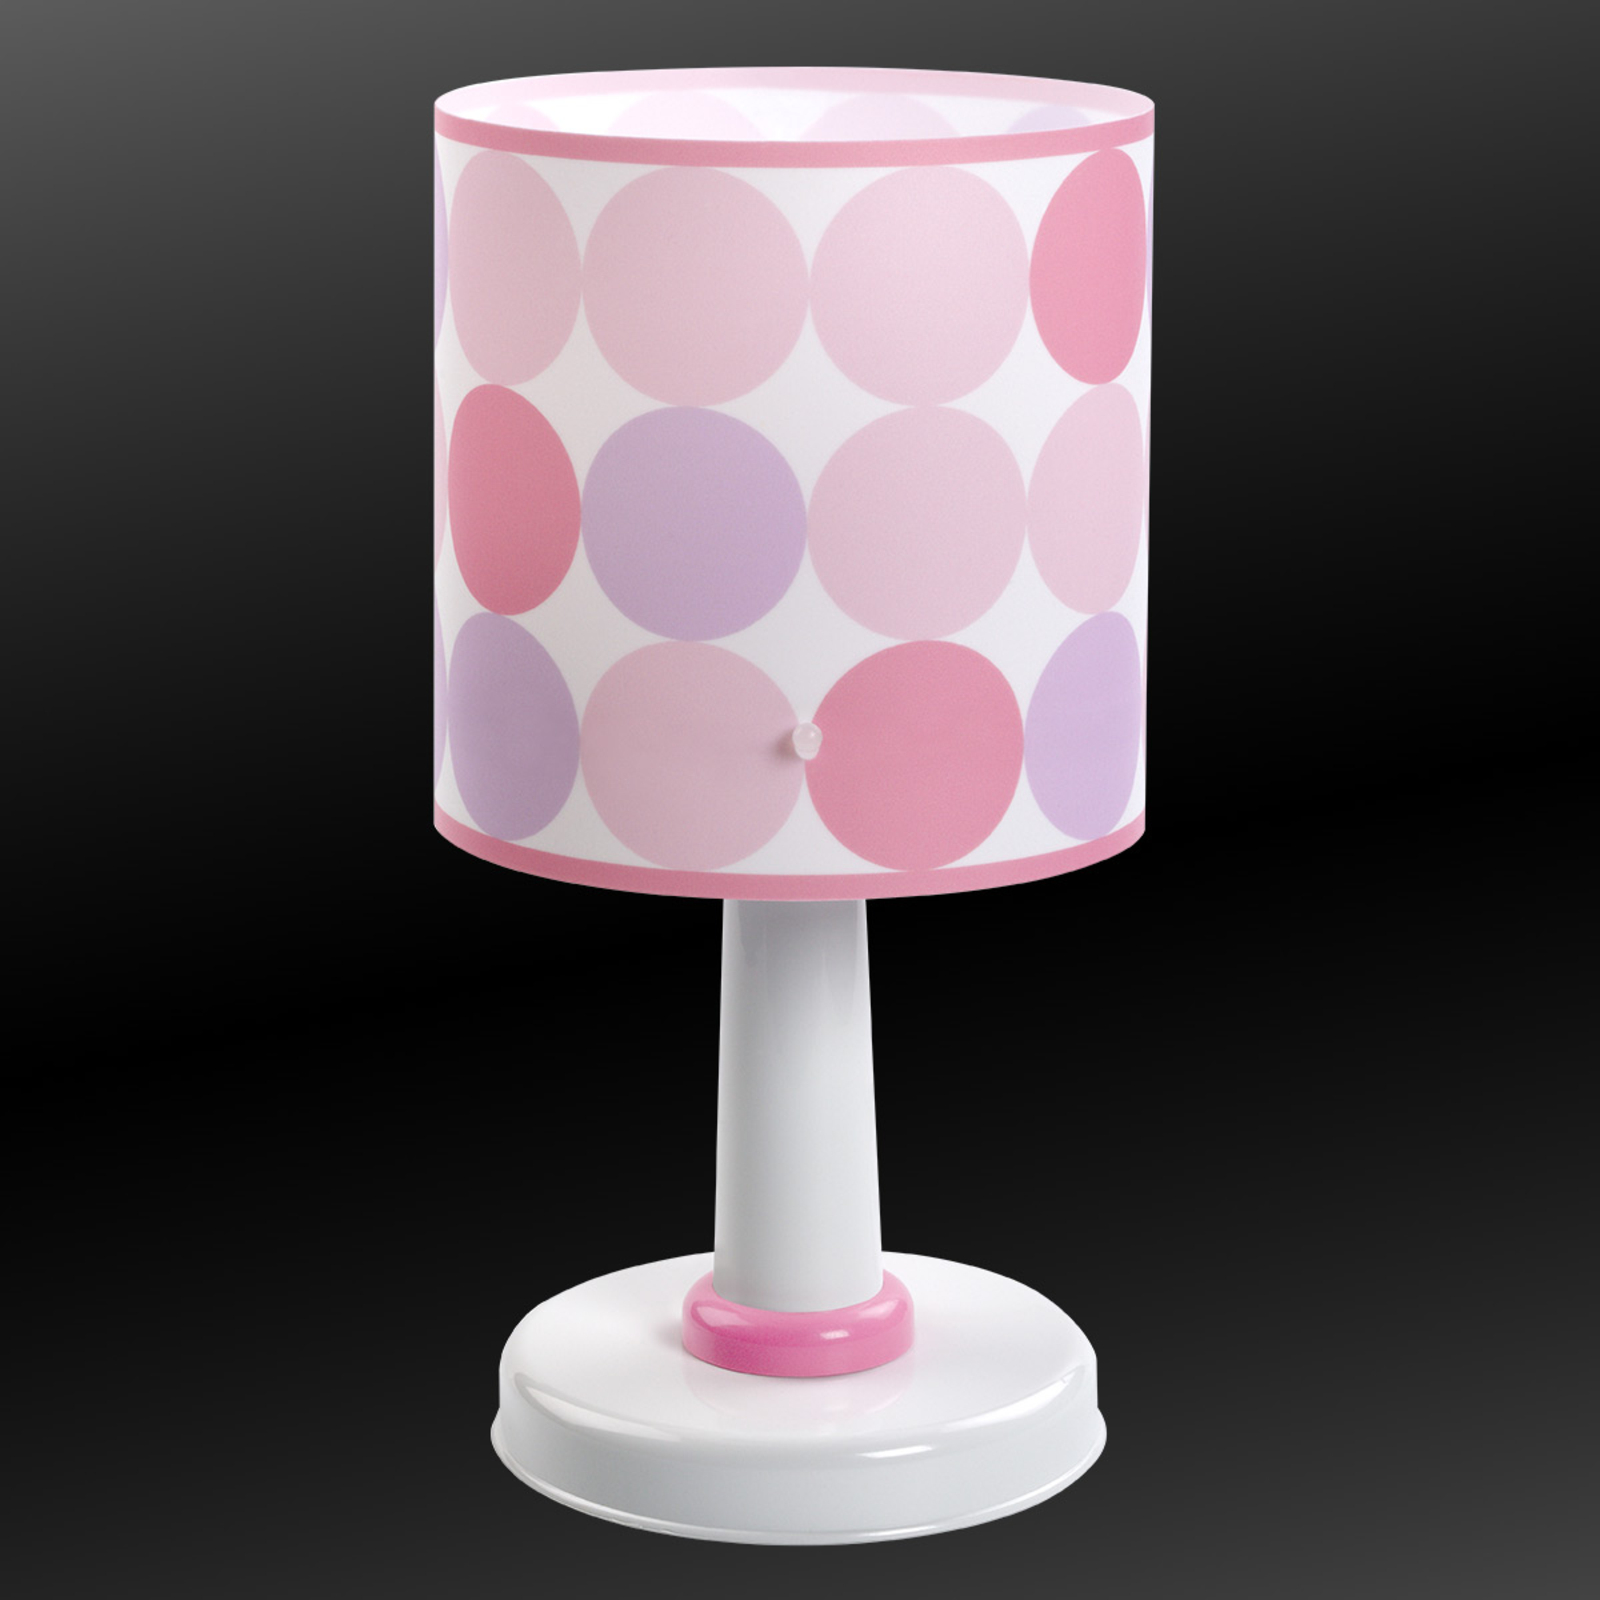 Barve - namizna svetilka s pikami v roza barvi